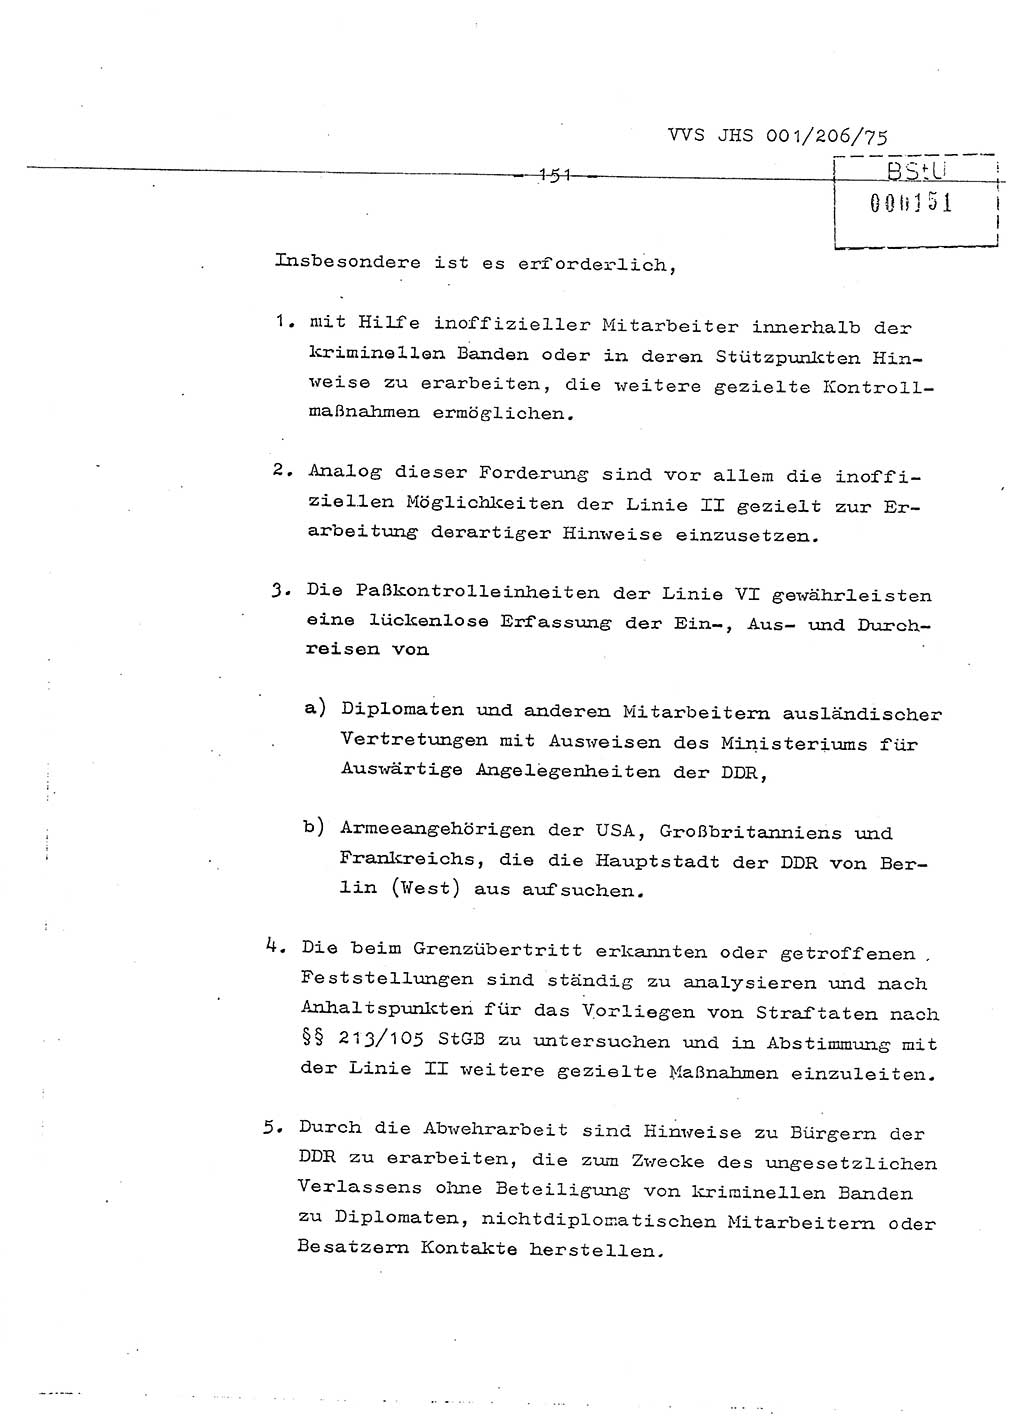 Dissertation Generalmajor Manfred Hummitzsch (Leiter der BV Leipzig), Generalmajor Heinz Fiedler (HA Ⅵ), Oberst Rolf Fister (HA Ⅸ), Ministerium für Staatssicherheit (MfS) [Deutsche Demokratische Republik (DDR)], Juristische Hochschule (JHS), Vertrauliche Verschlußsache (VVS) 001-206/75, Potsdam 1975, Seite 151 (Diss. MfS DDR JHS VVS 001-206/75 1975, S. 151)